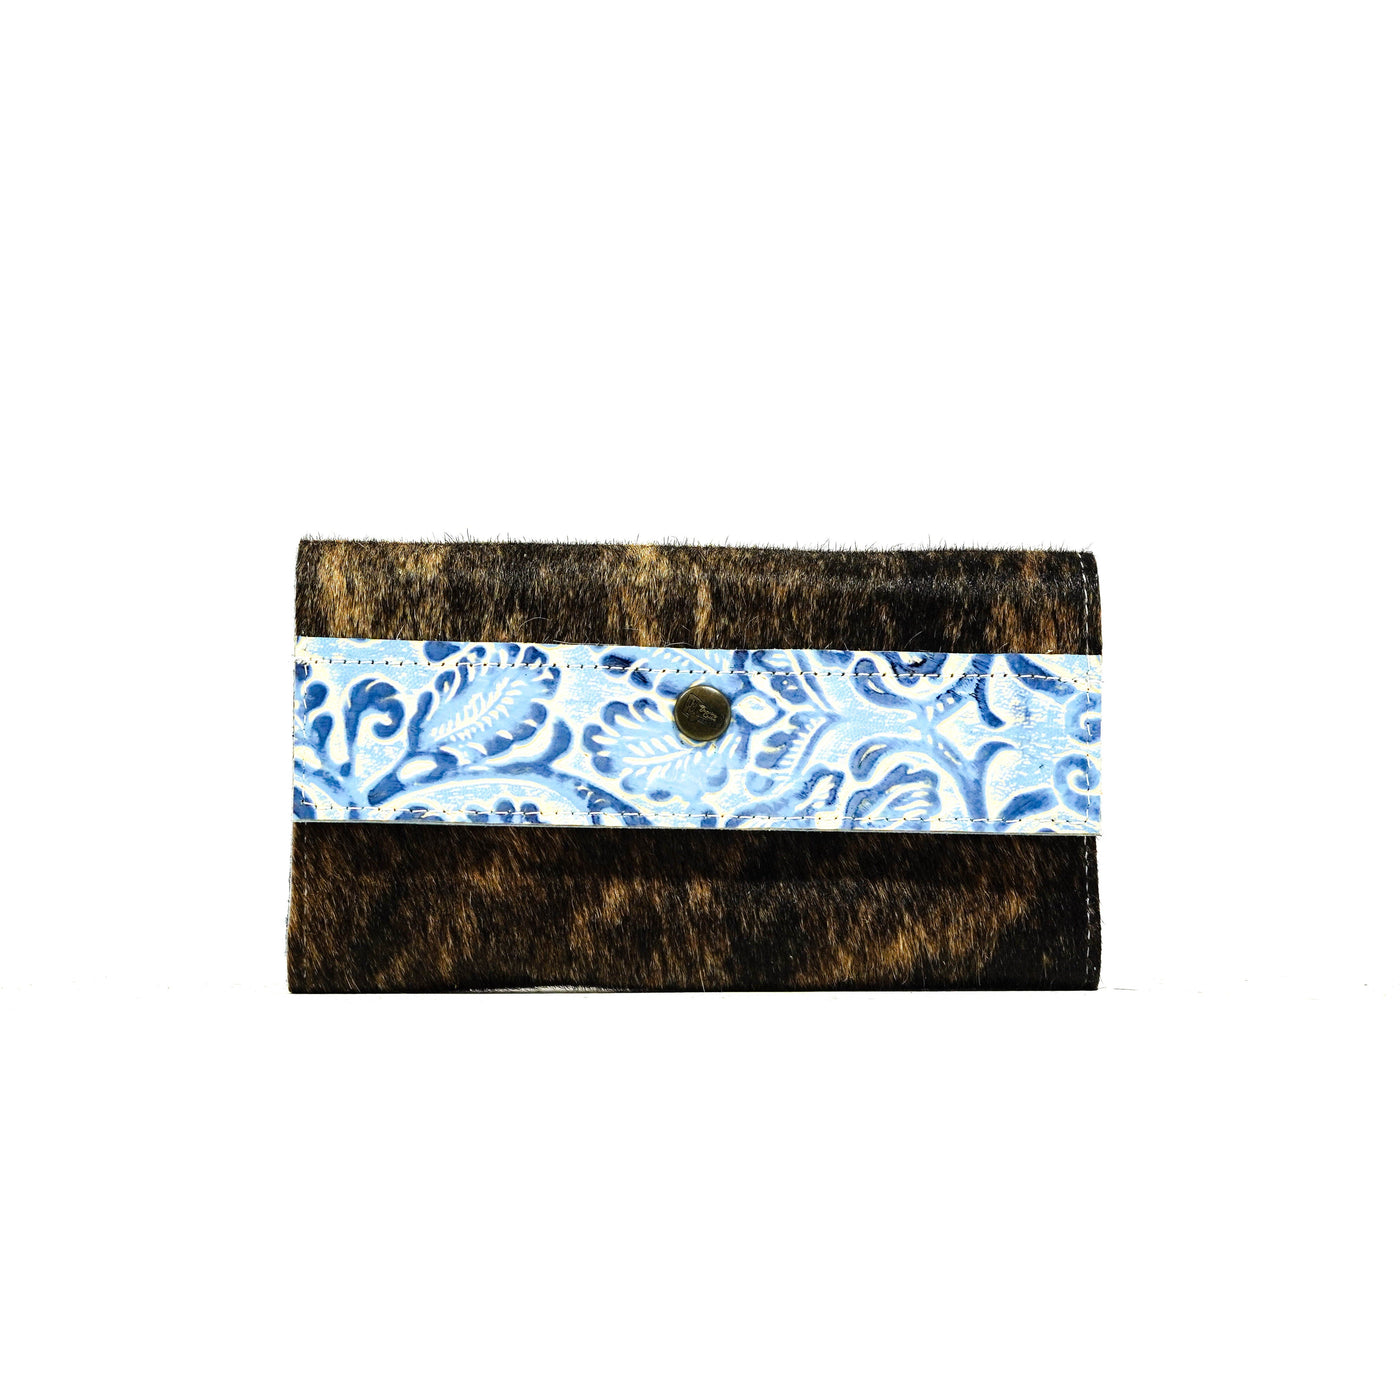 Kacey Wallet - Dark Brindle w/ Galaxy Tool-Kacey Wallet-Western-Cowhide-Bags-Handmade-Products-Gifts-Dancing Cactus Designs